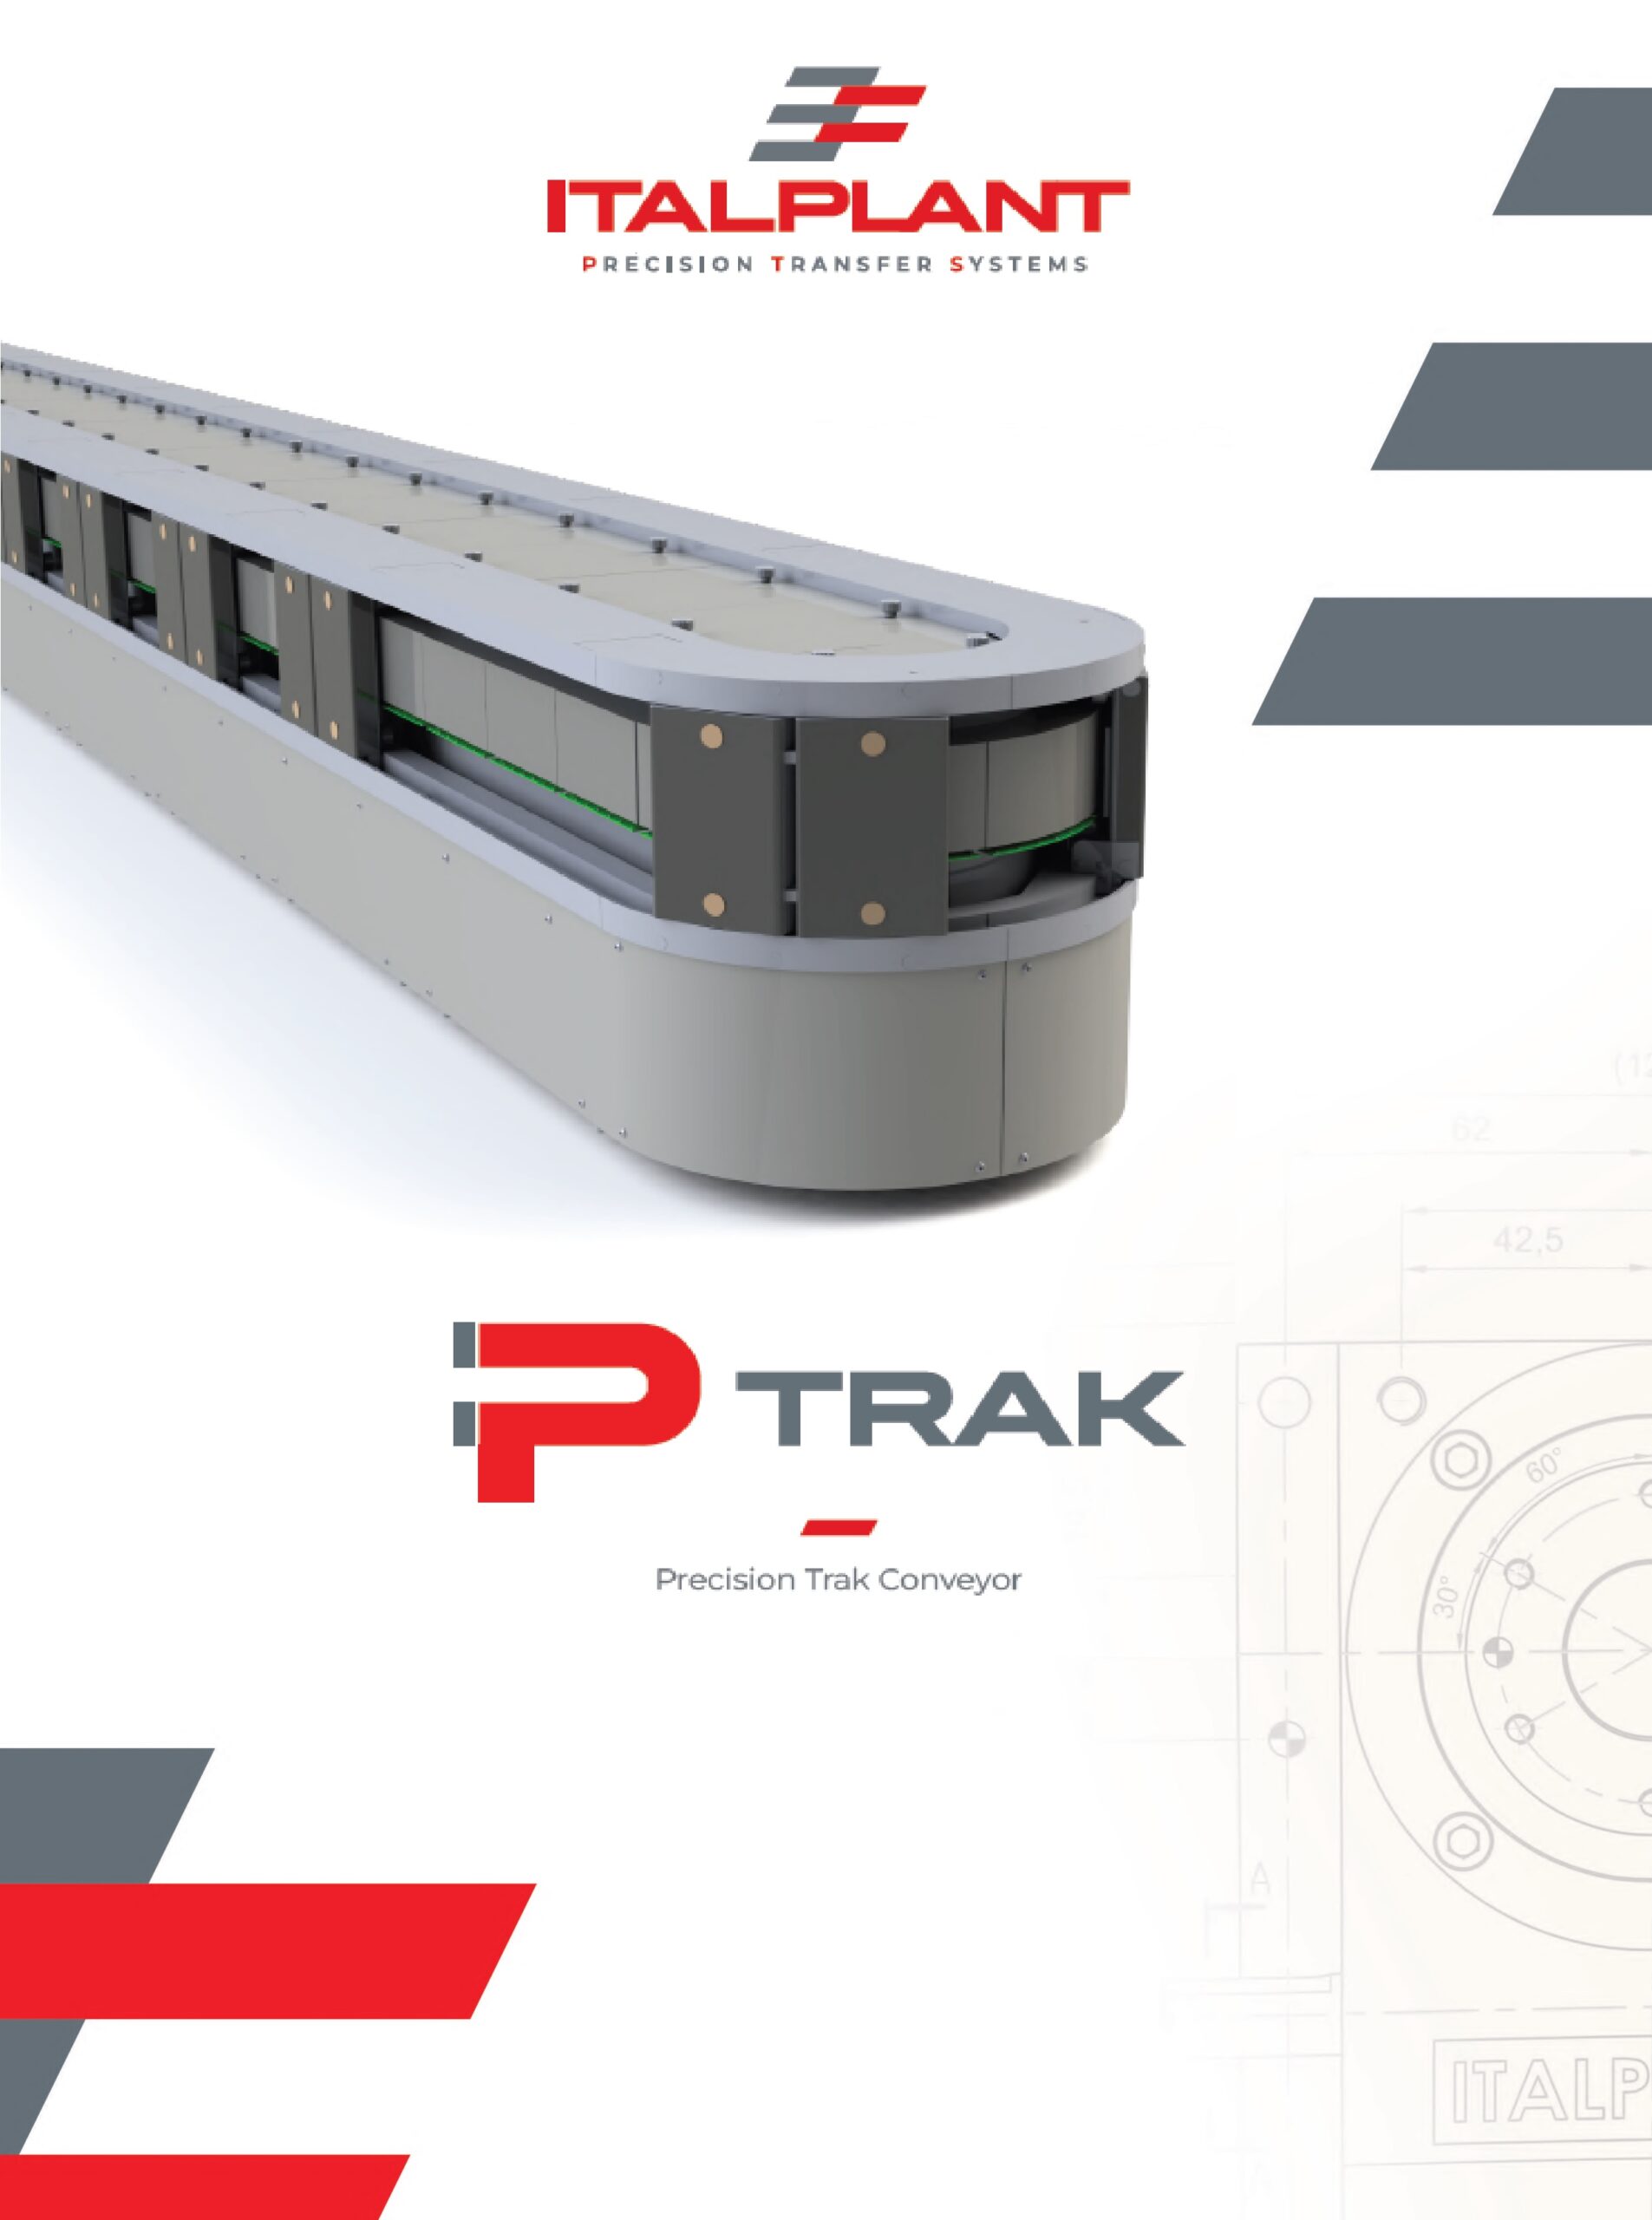 Precision Track Conveyor